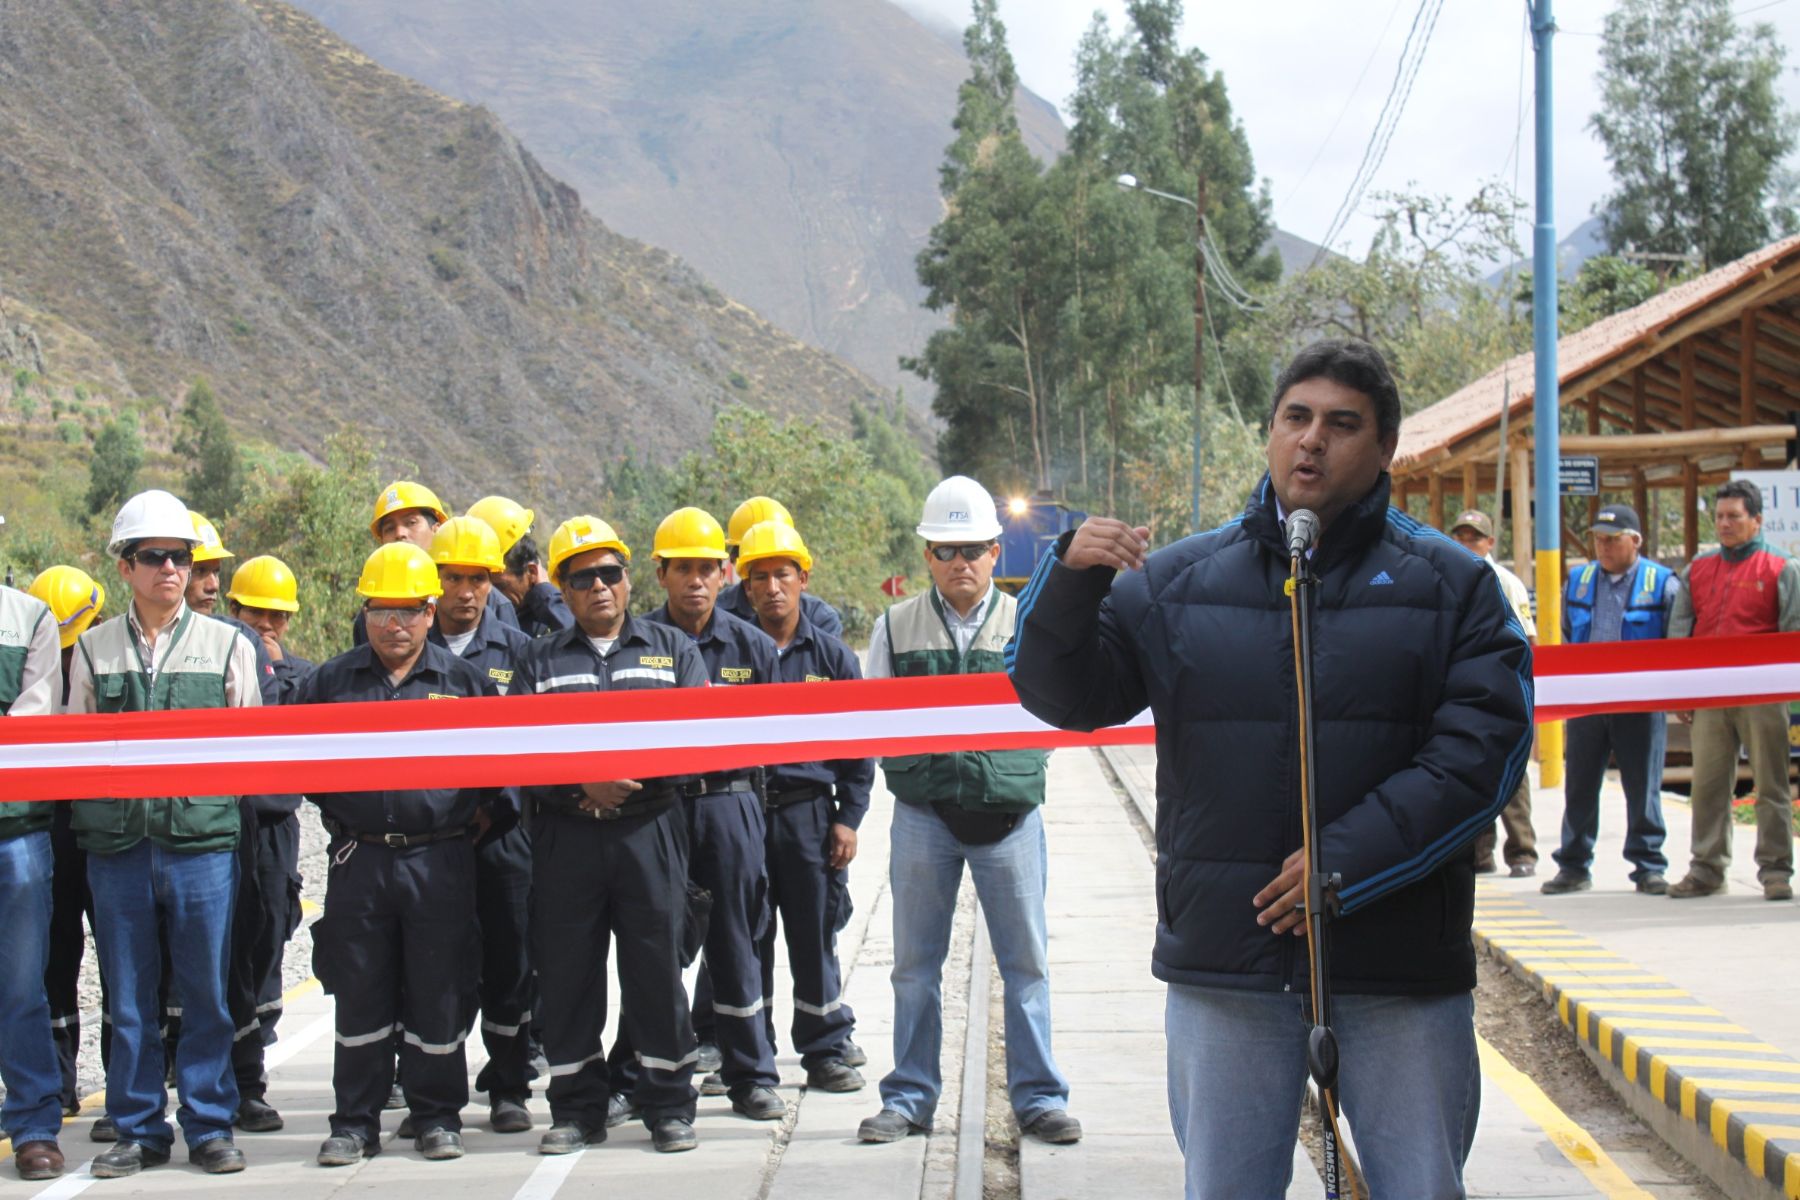 El viceministro de Transportes, Hjalmar Marangunich, participó en la ceremonia de reapertura de la vía férrea Cusco - Machu Picchu. Foto: MTC.